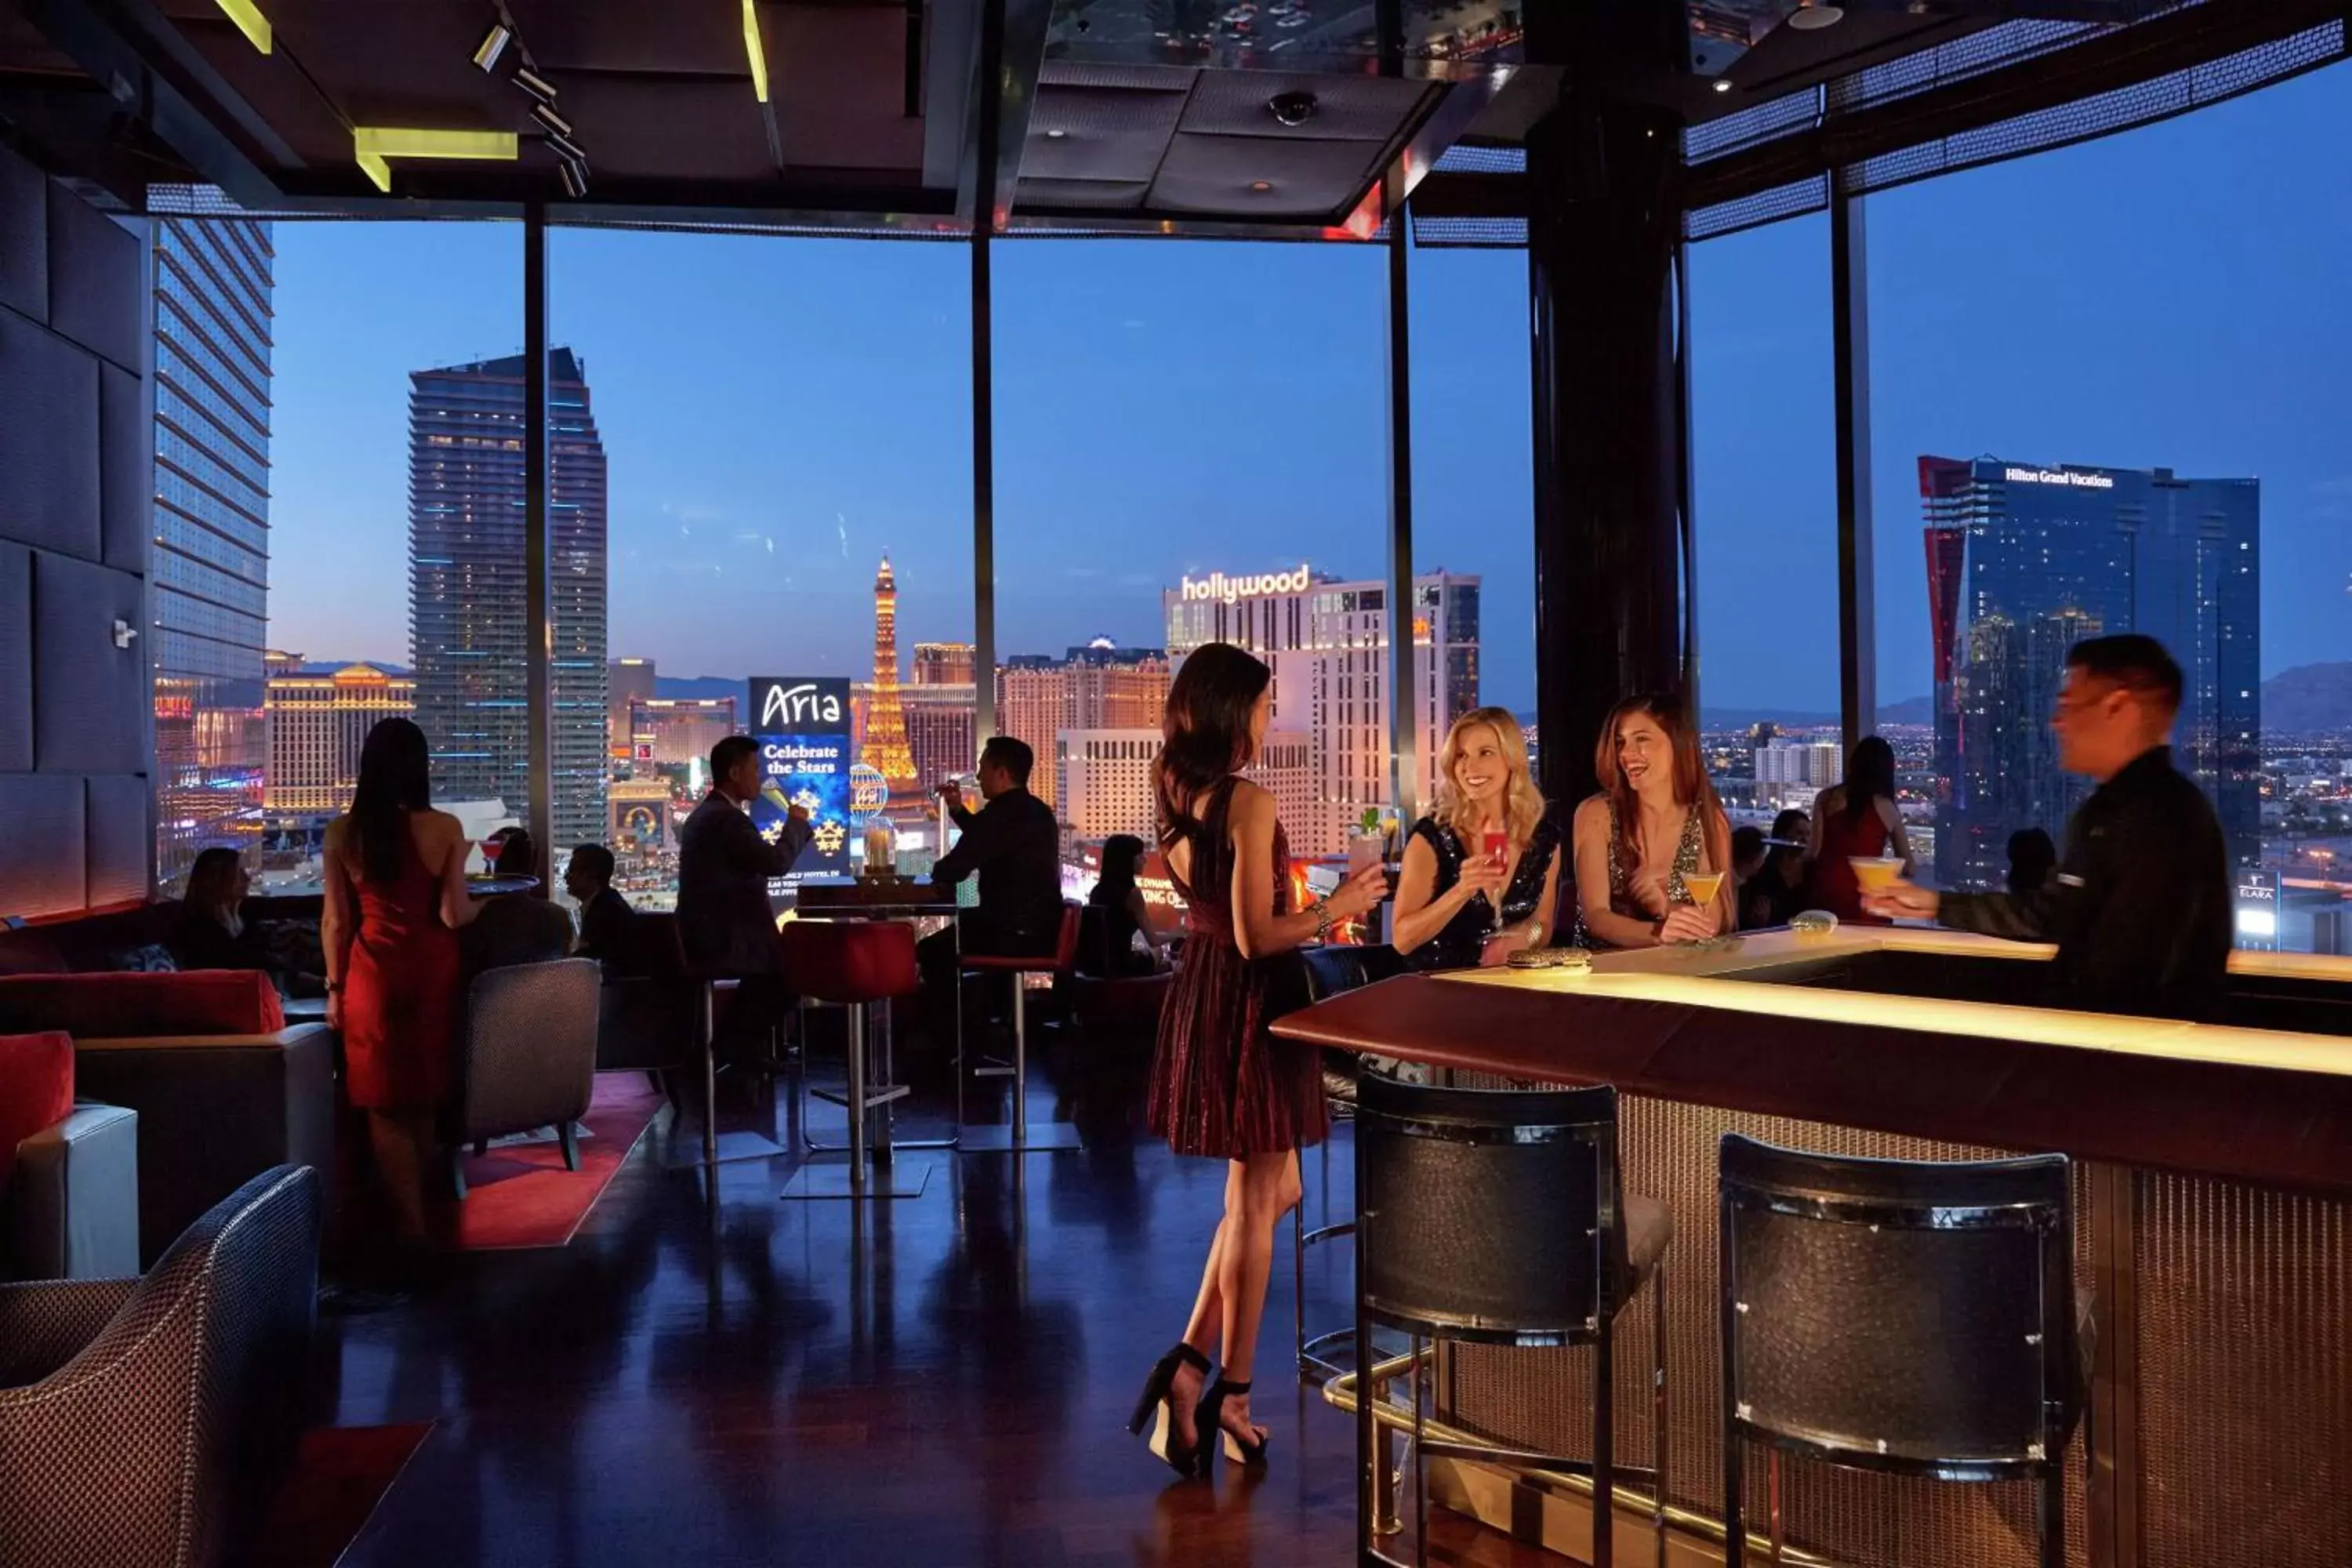 Lounge or bar in Waldorf Astoria Las Vegas